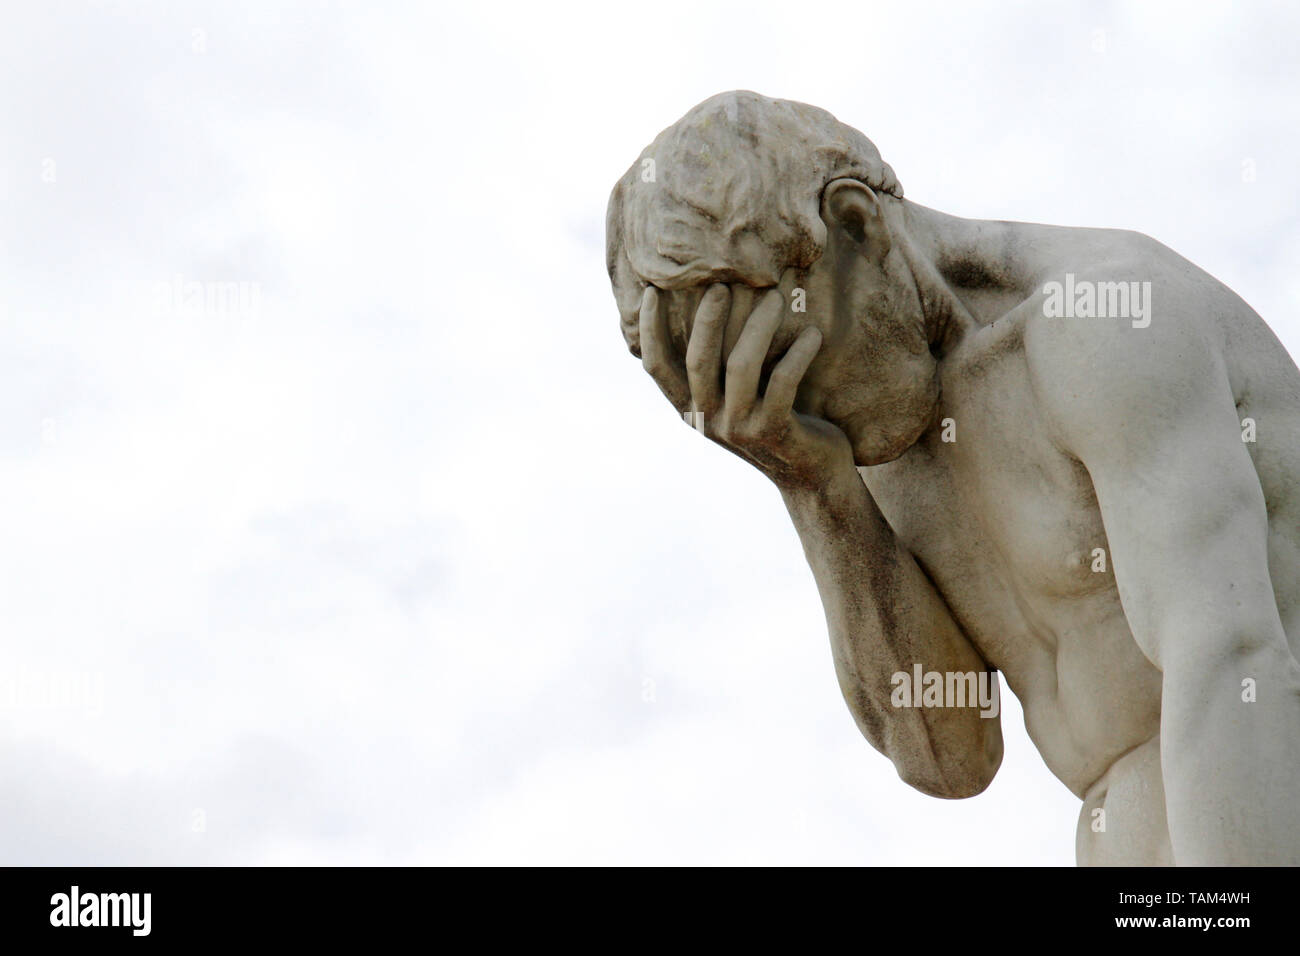 Facepalm - honte, triste, déprimé. Statue de Banque D'Images